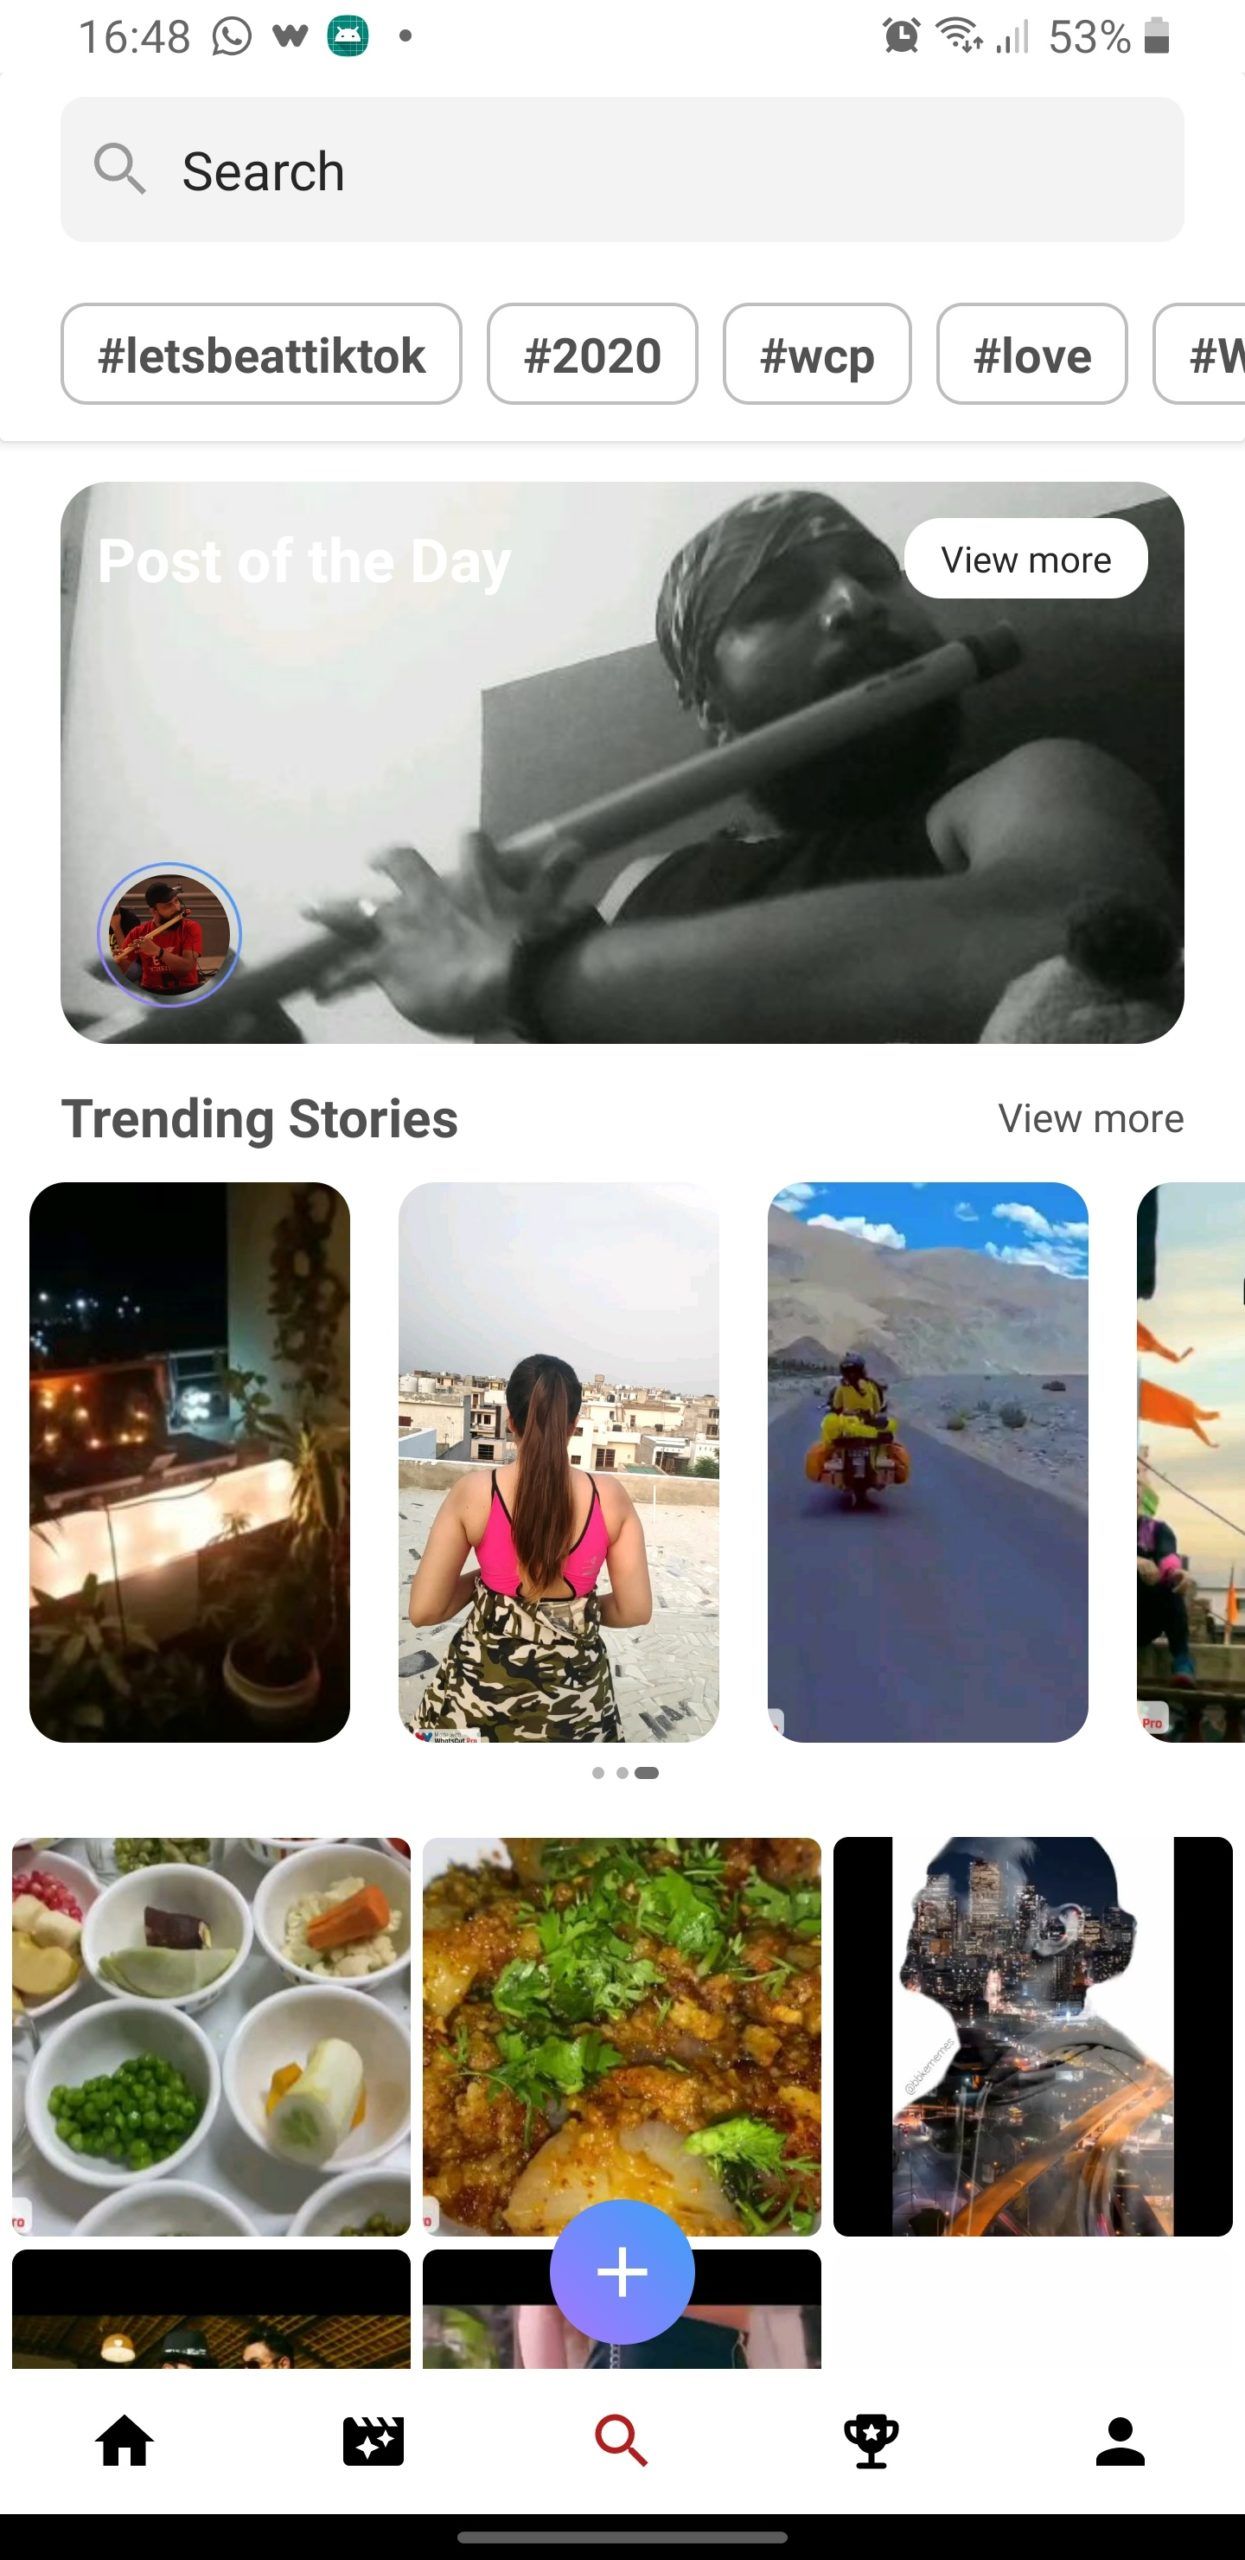 WhatsCut Pro App Screenshot - Search Page